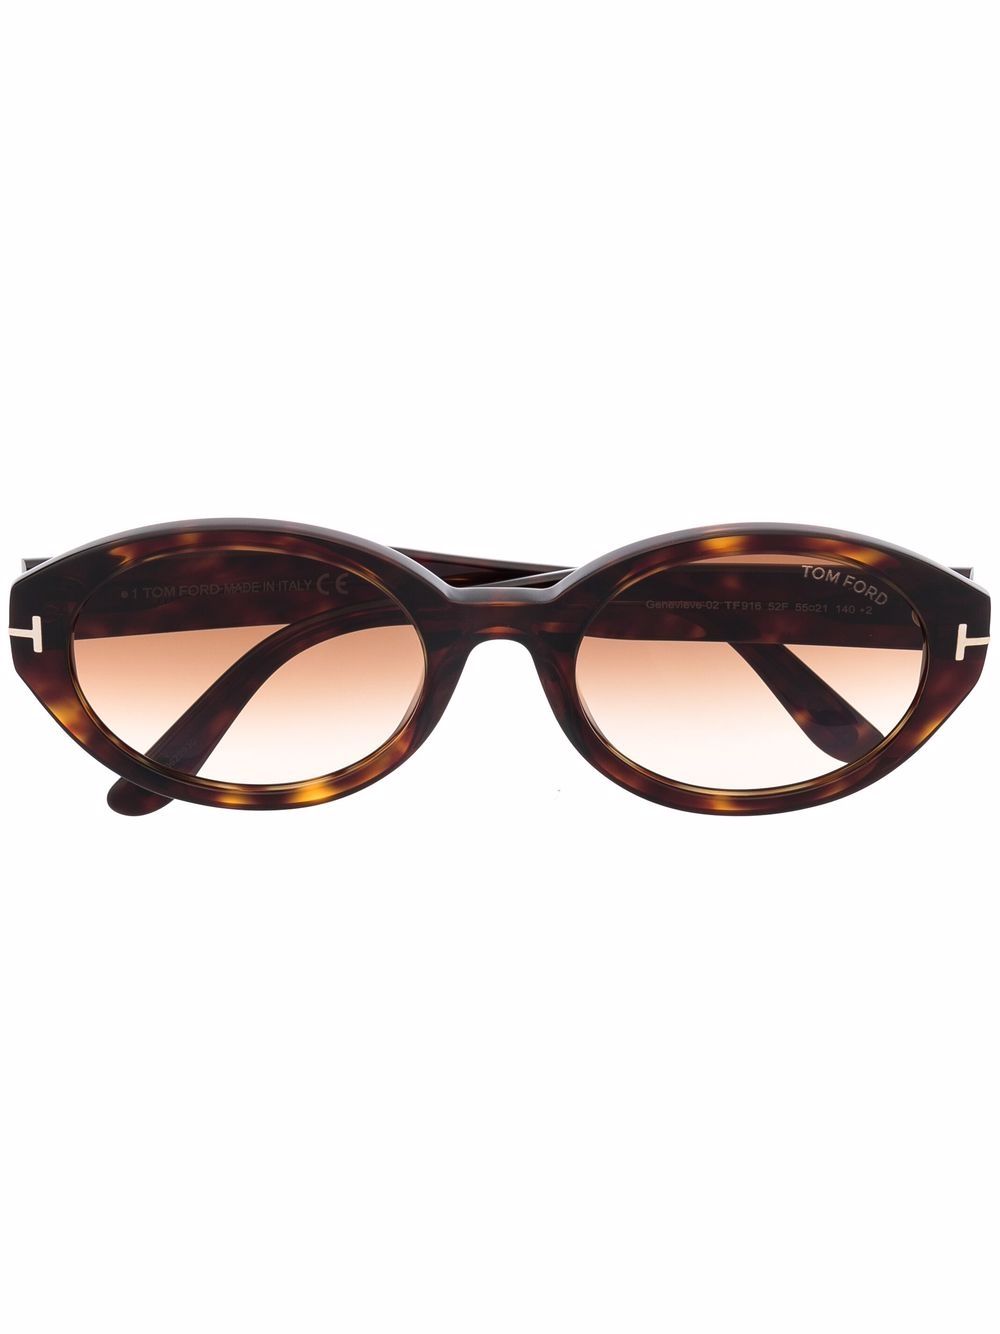 TOM FORD Eyewear tortoiseshell-effect Round Sunglasses - Farfetch